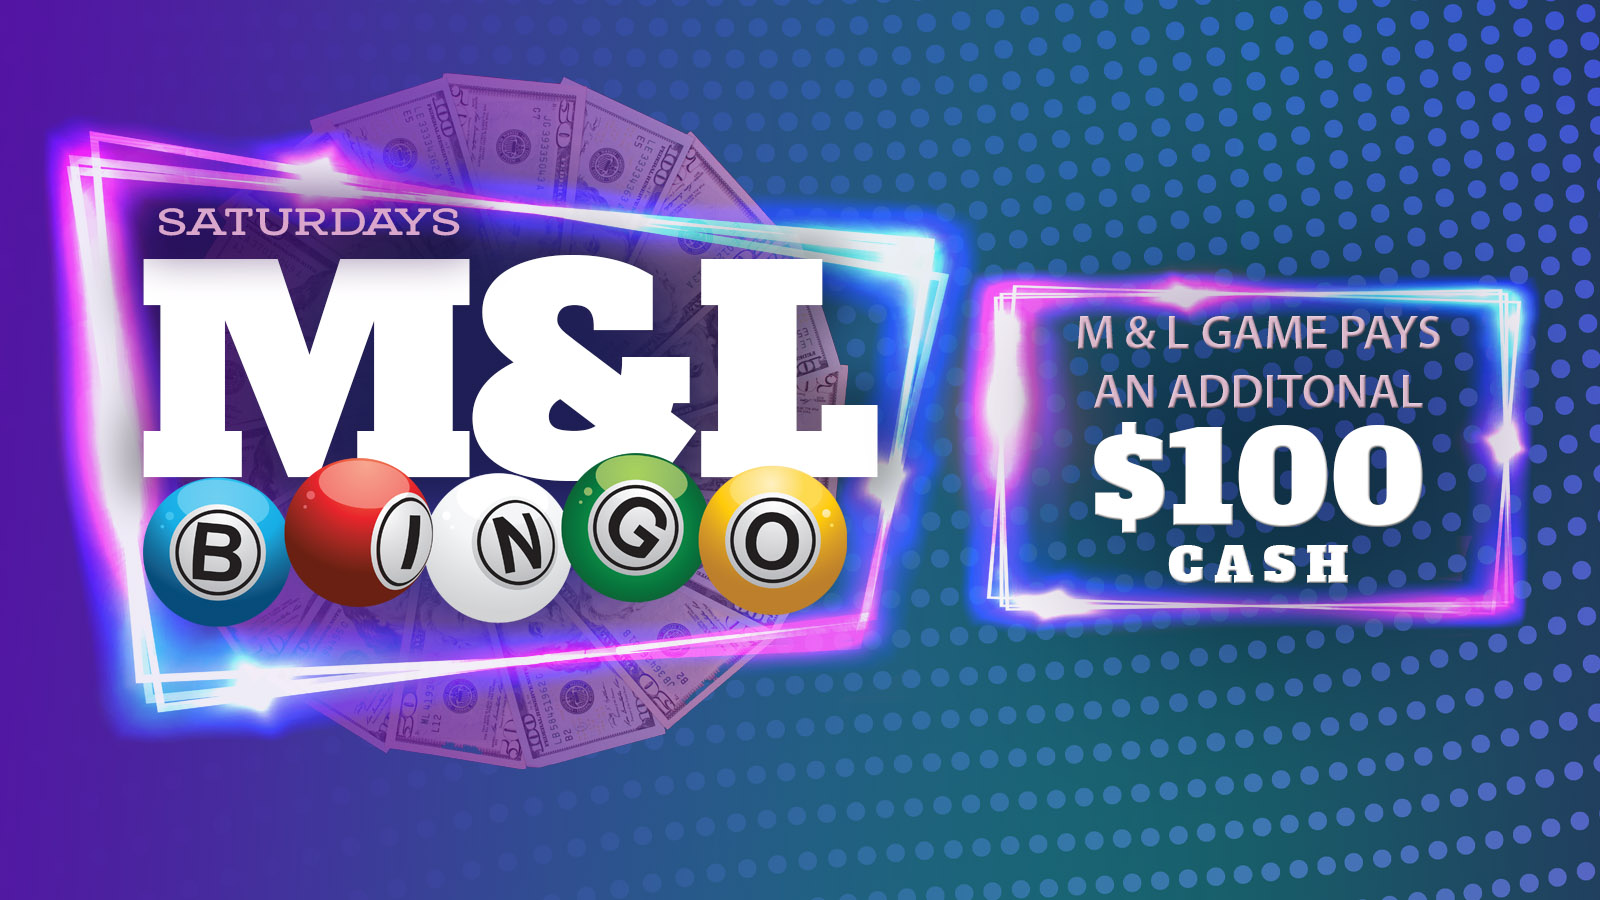 Play M&L Bingo At Mole Lake Casino